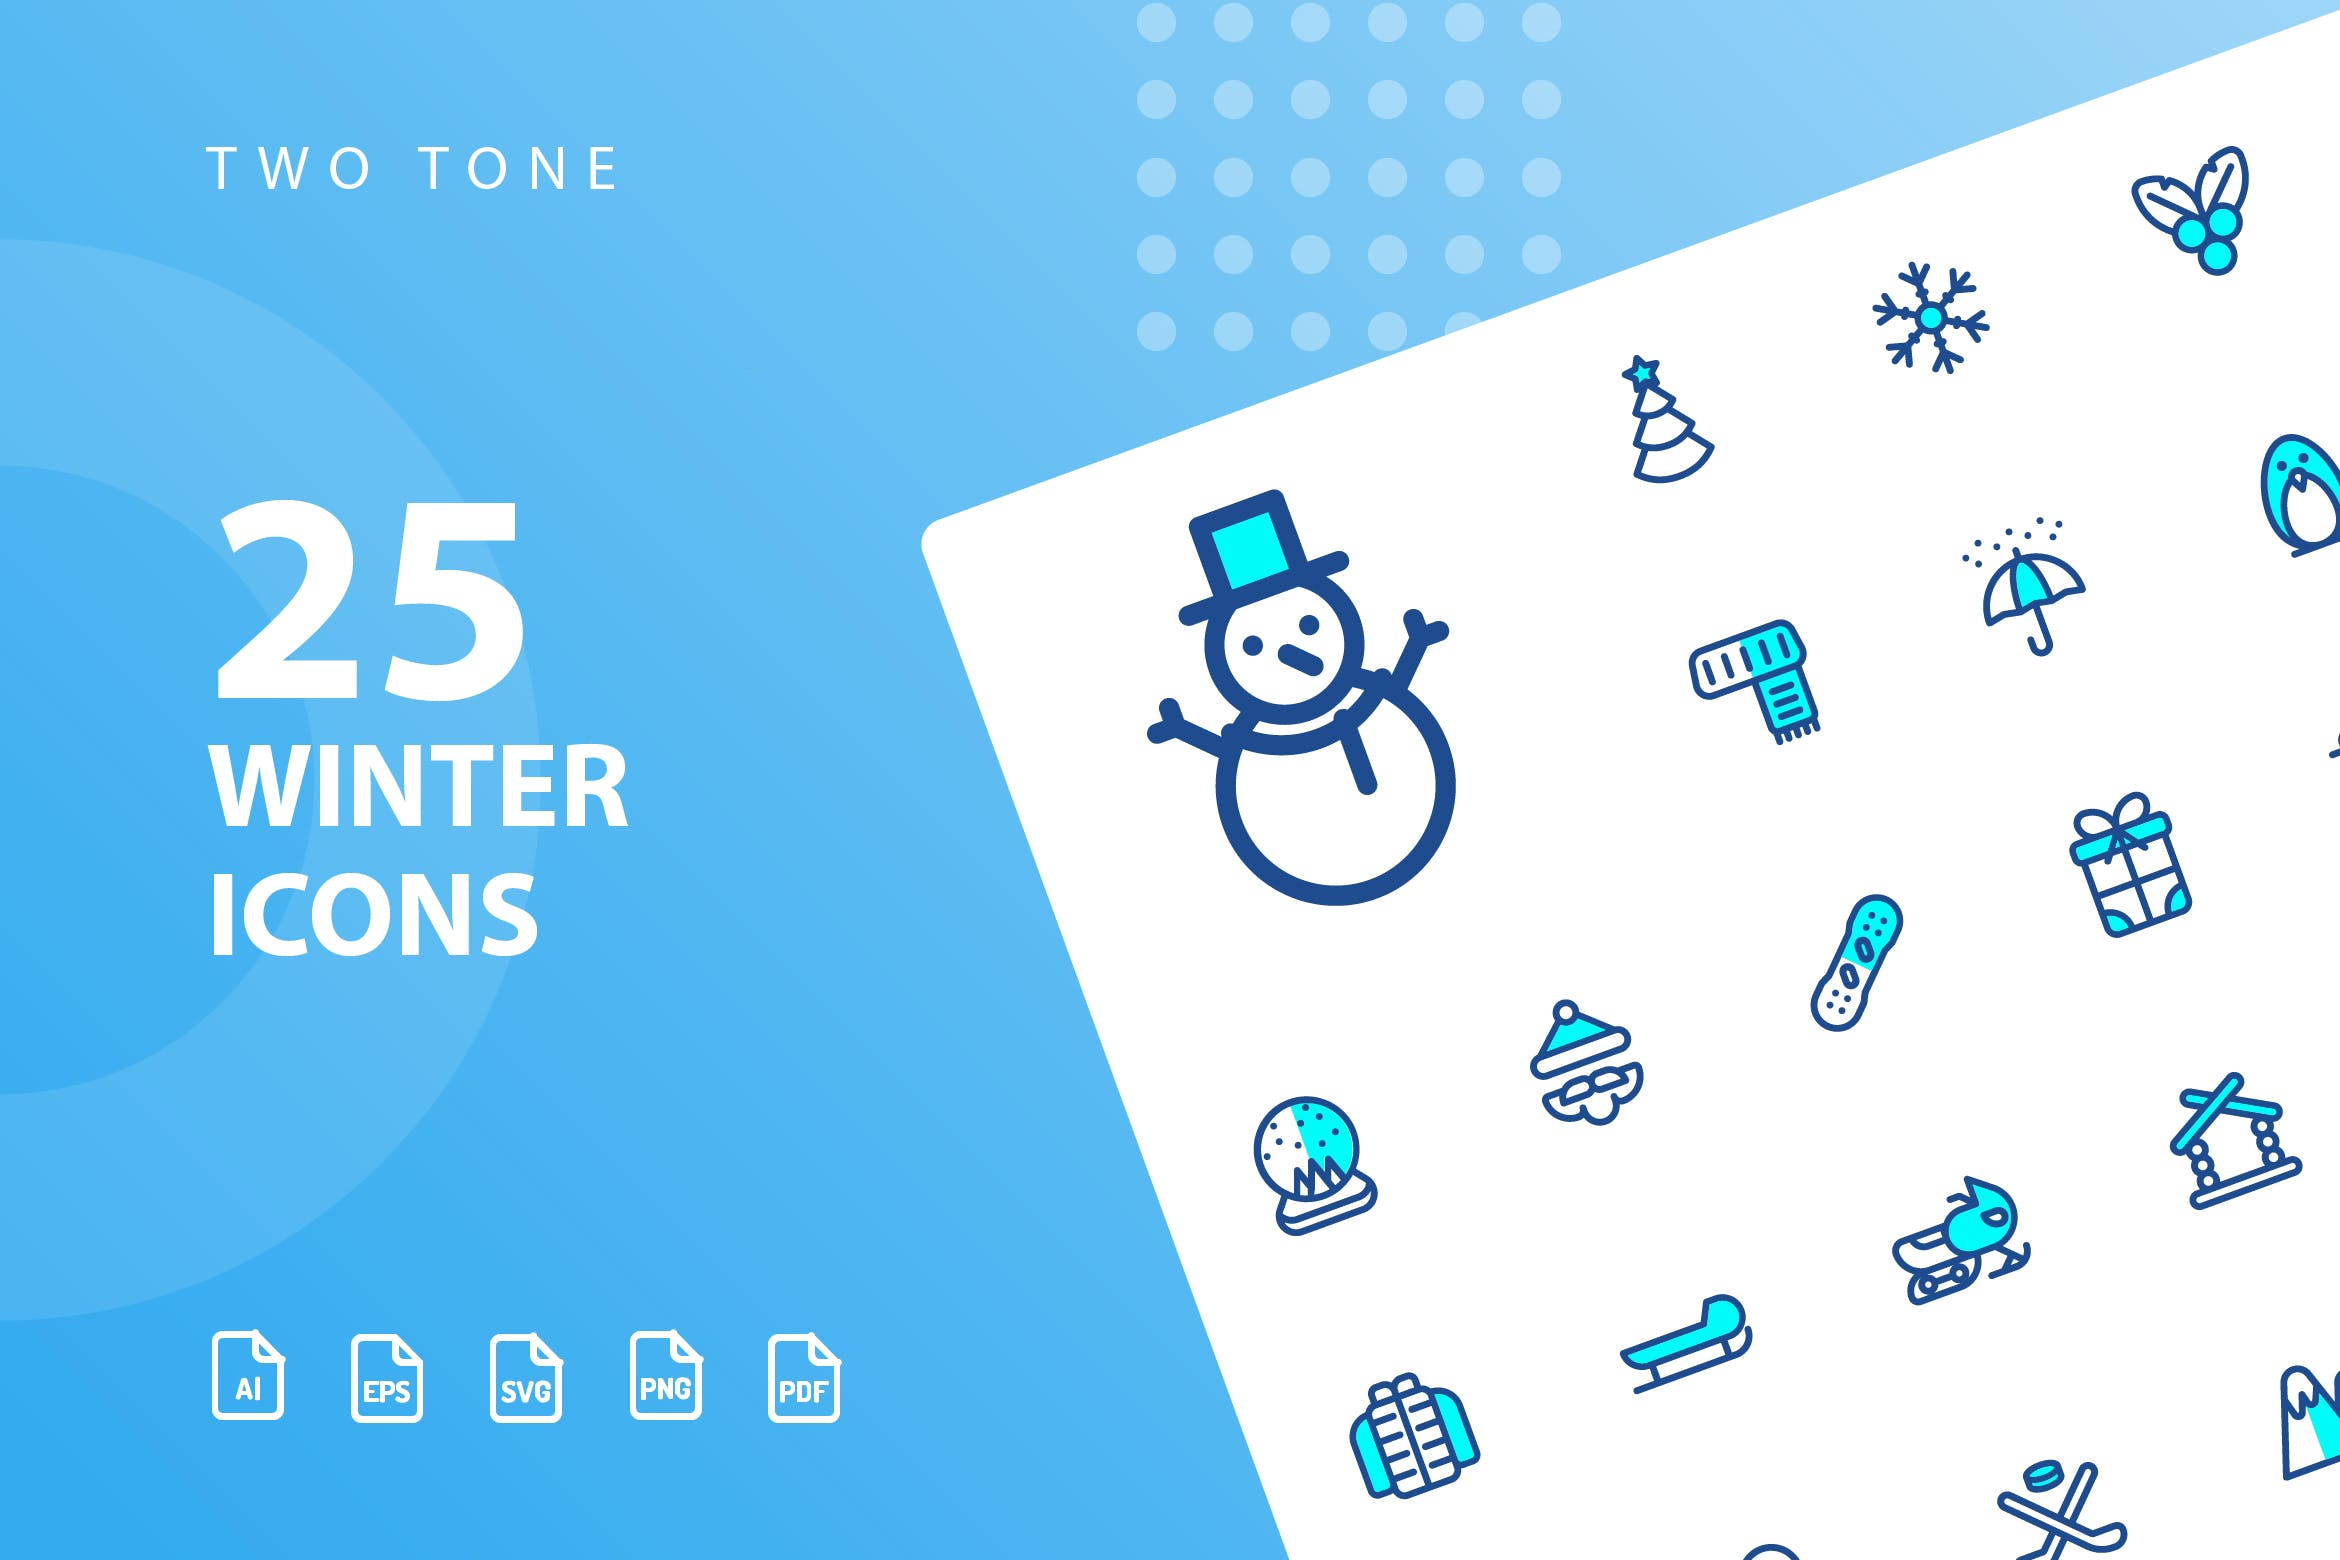 25枚冬天主题双色调矢量素材库精选图标v1 Winter Two Tone Icons插图